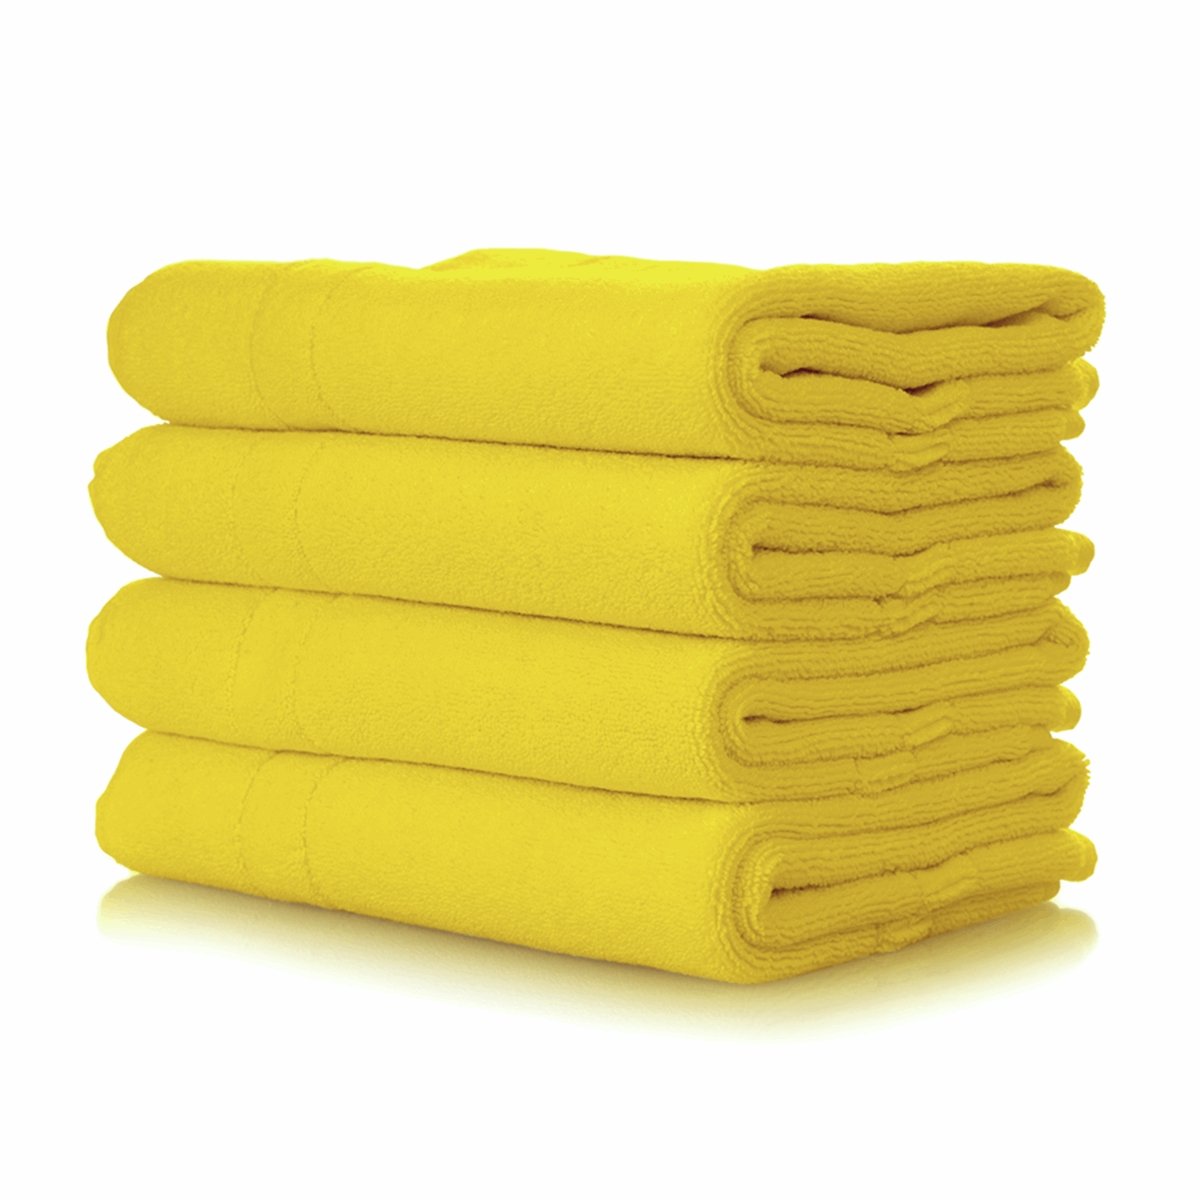 Dylon Machine Fabric Dye Pod 350g- Sunflower Yellow 05 - Pound A Metre